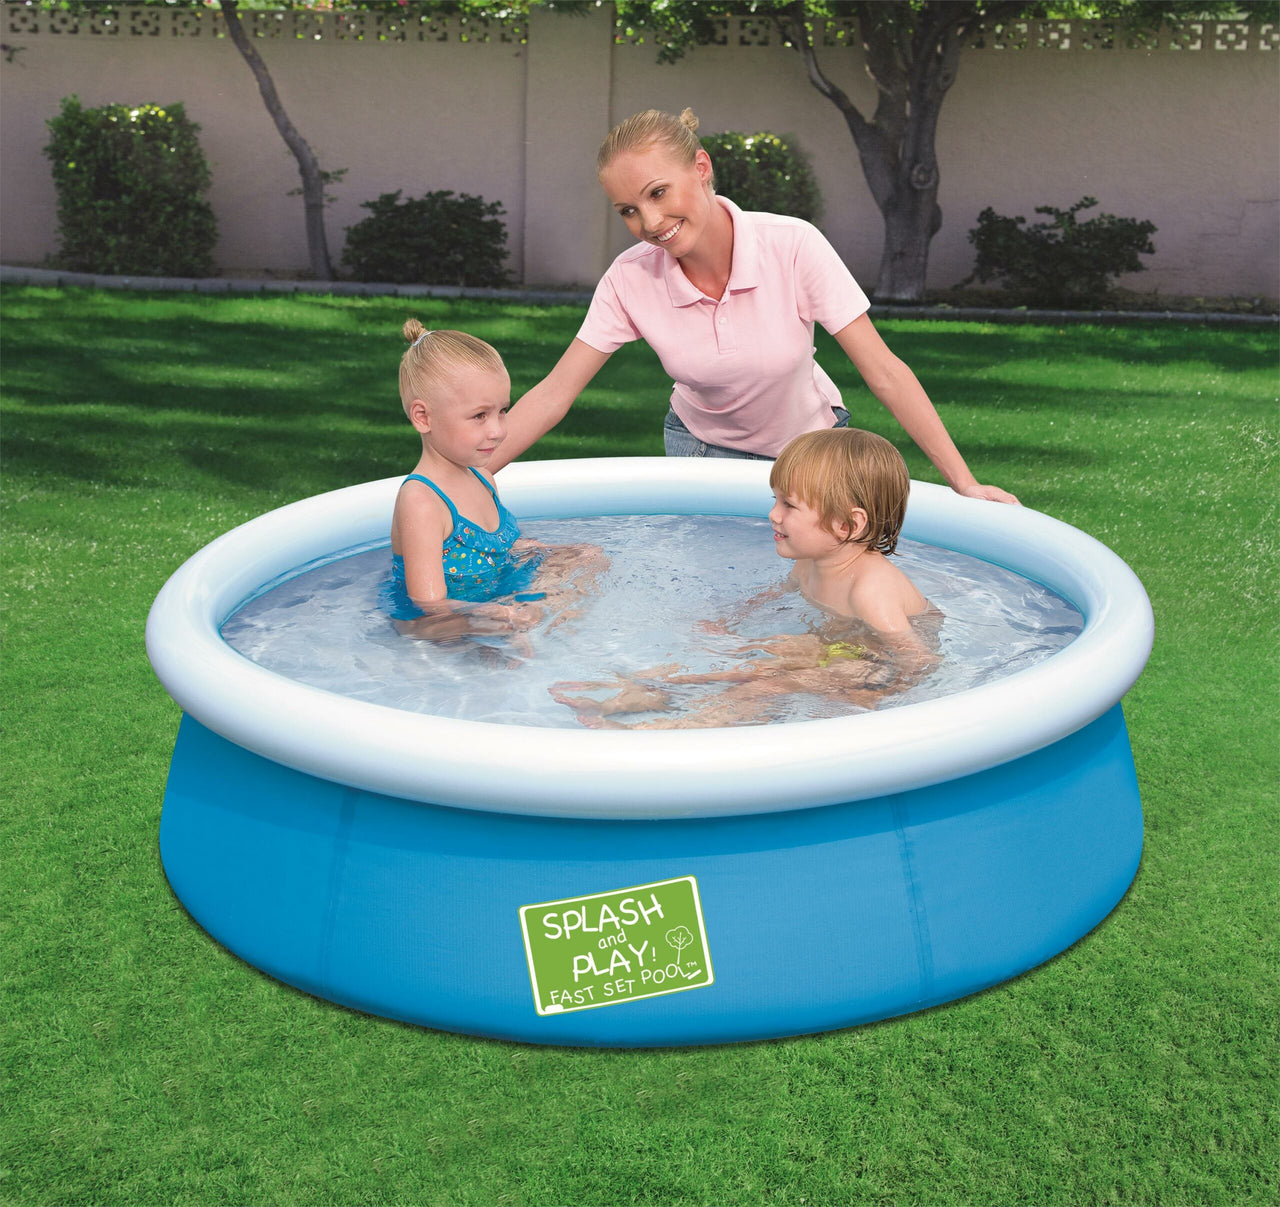 Bestway Inflatable Easy Set Pool - (5' x 15'')